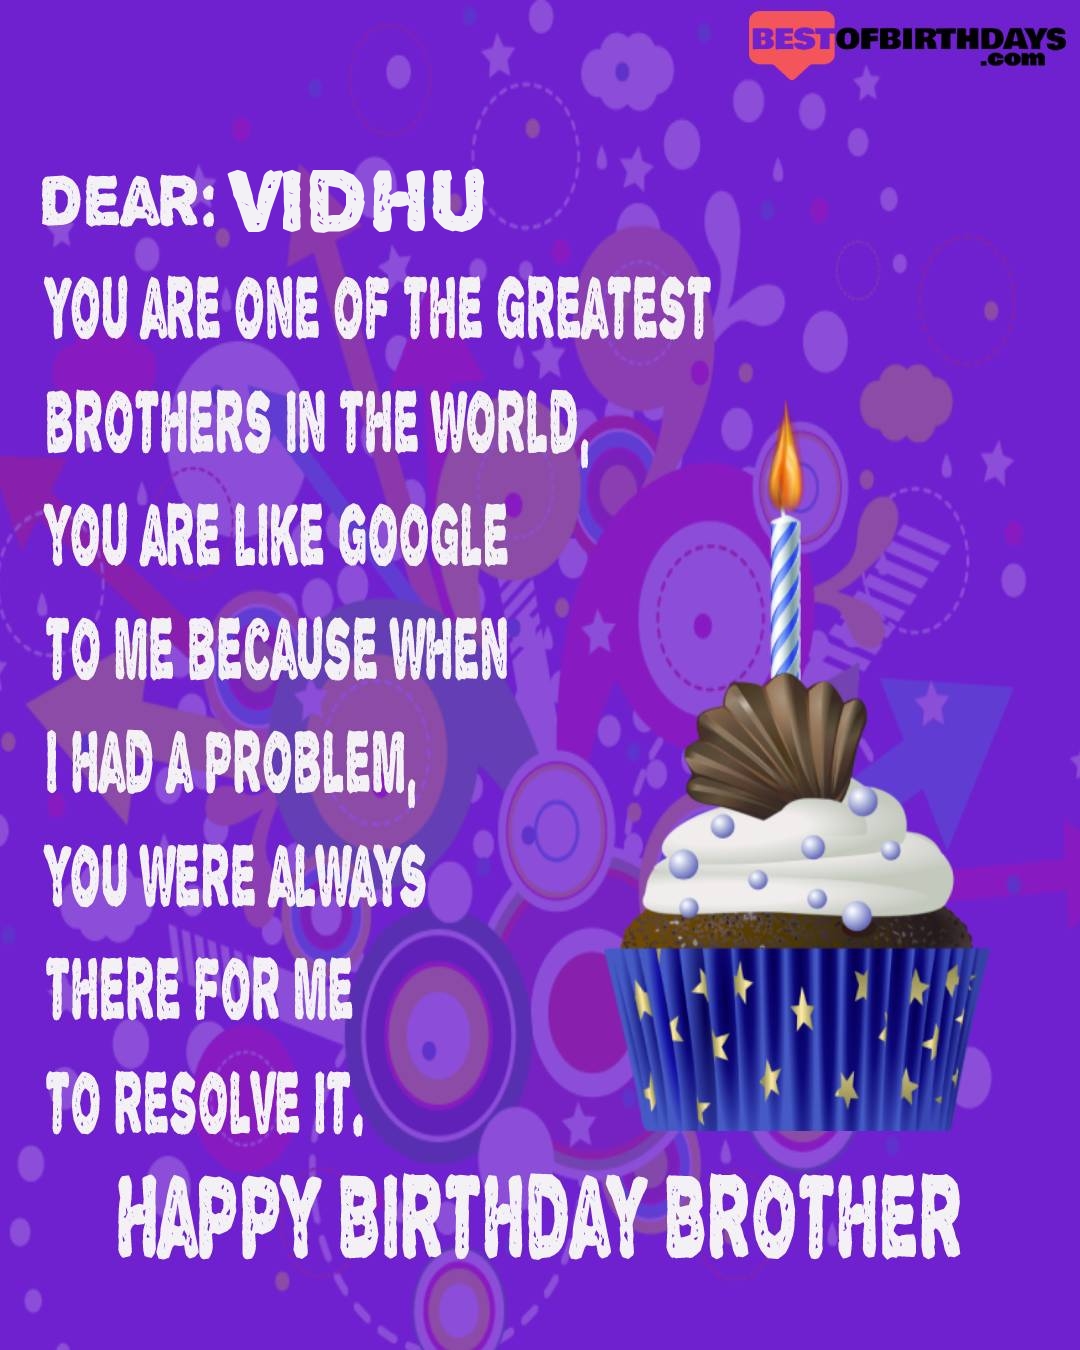 Happy birthday vidhu bhai brother bro